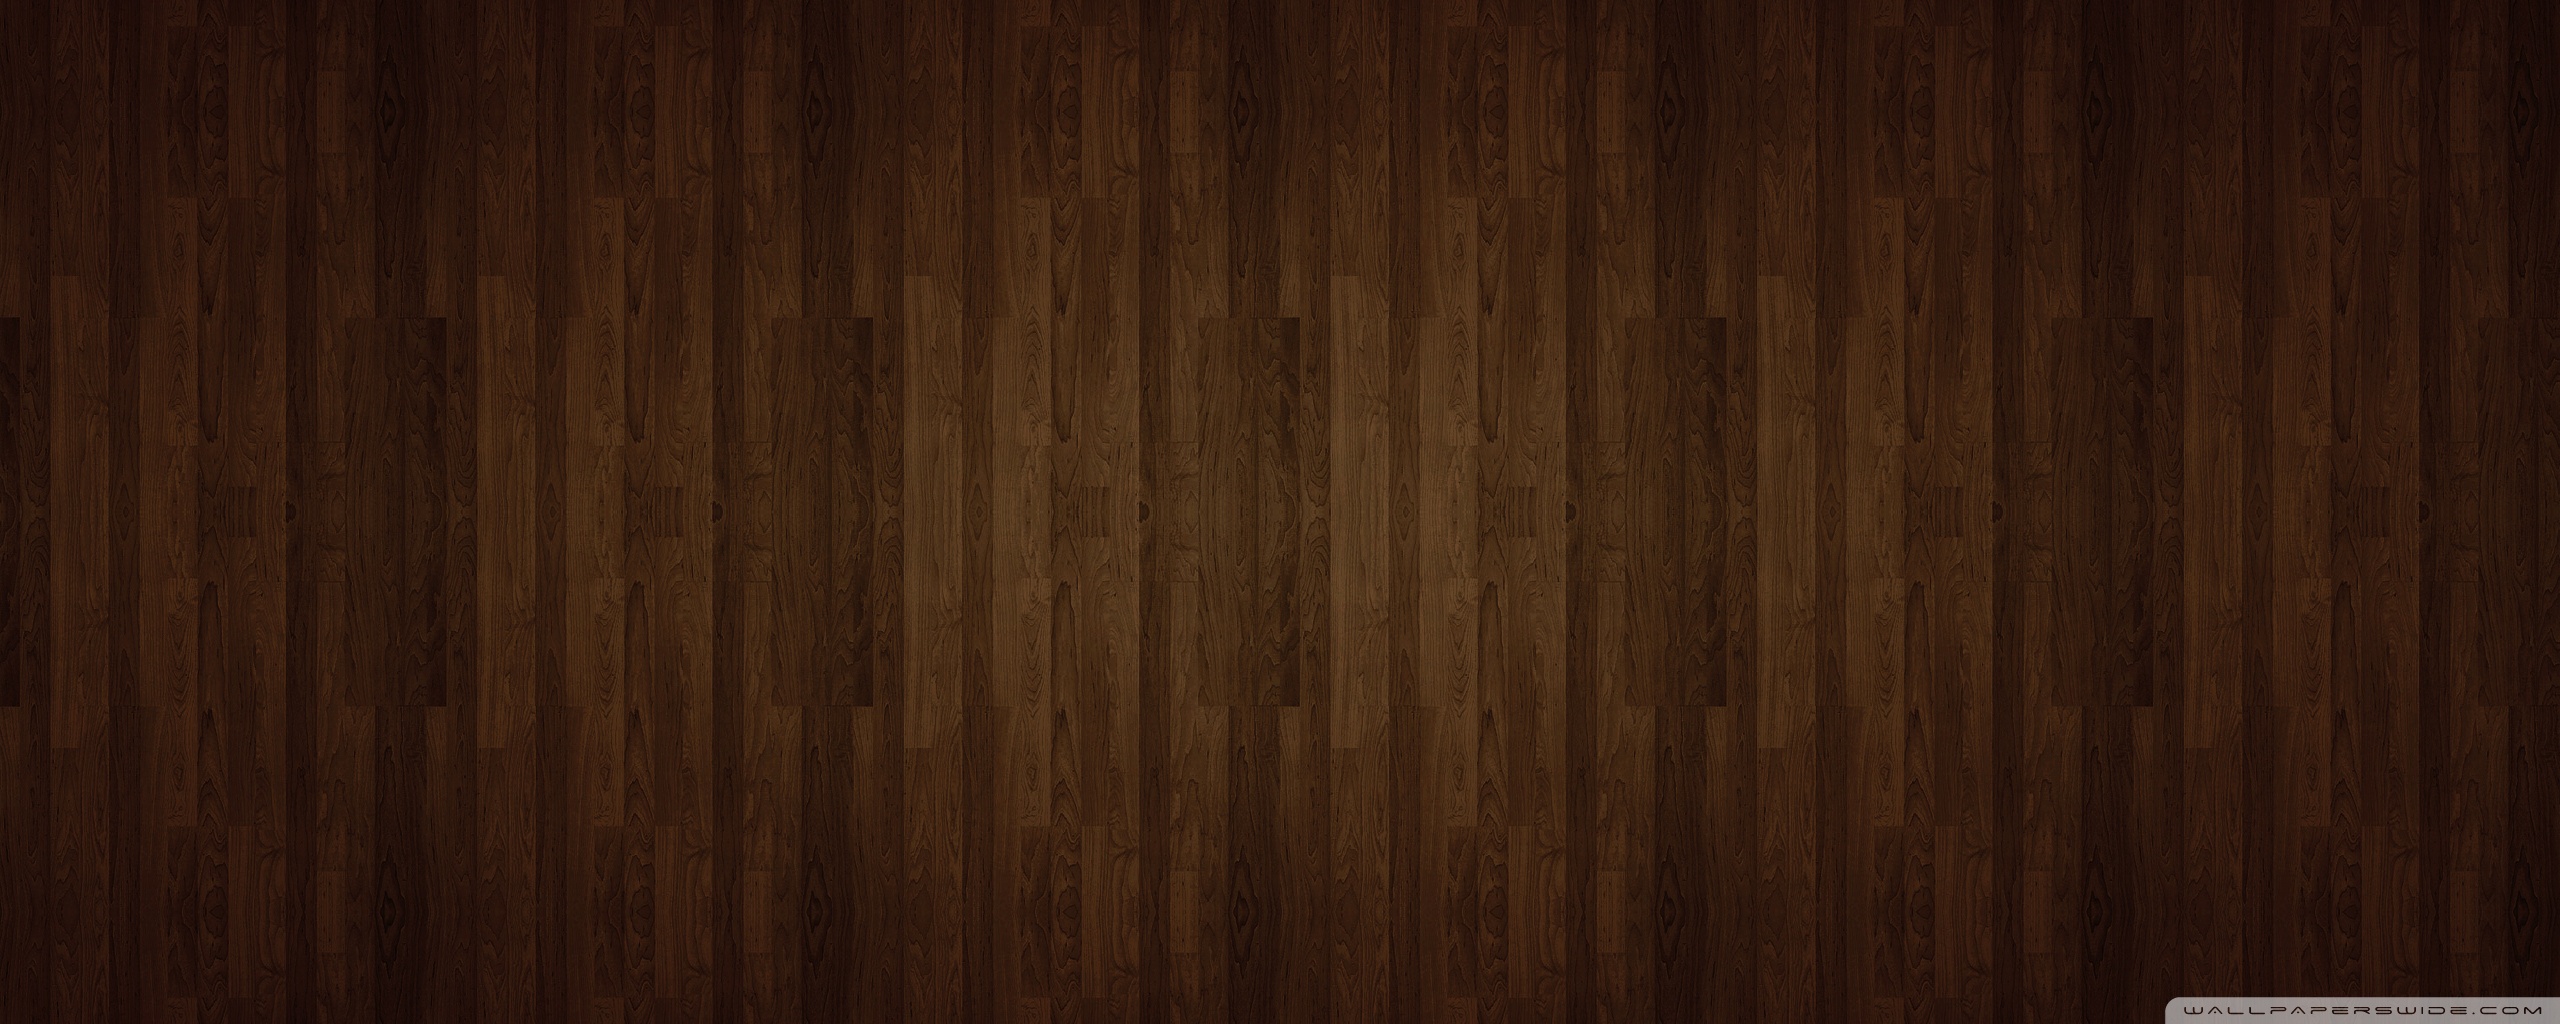 Wood Floor Texture Wallpaper 2560x1024 55888